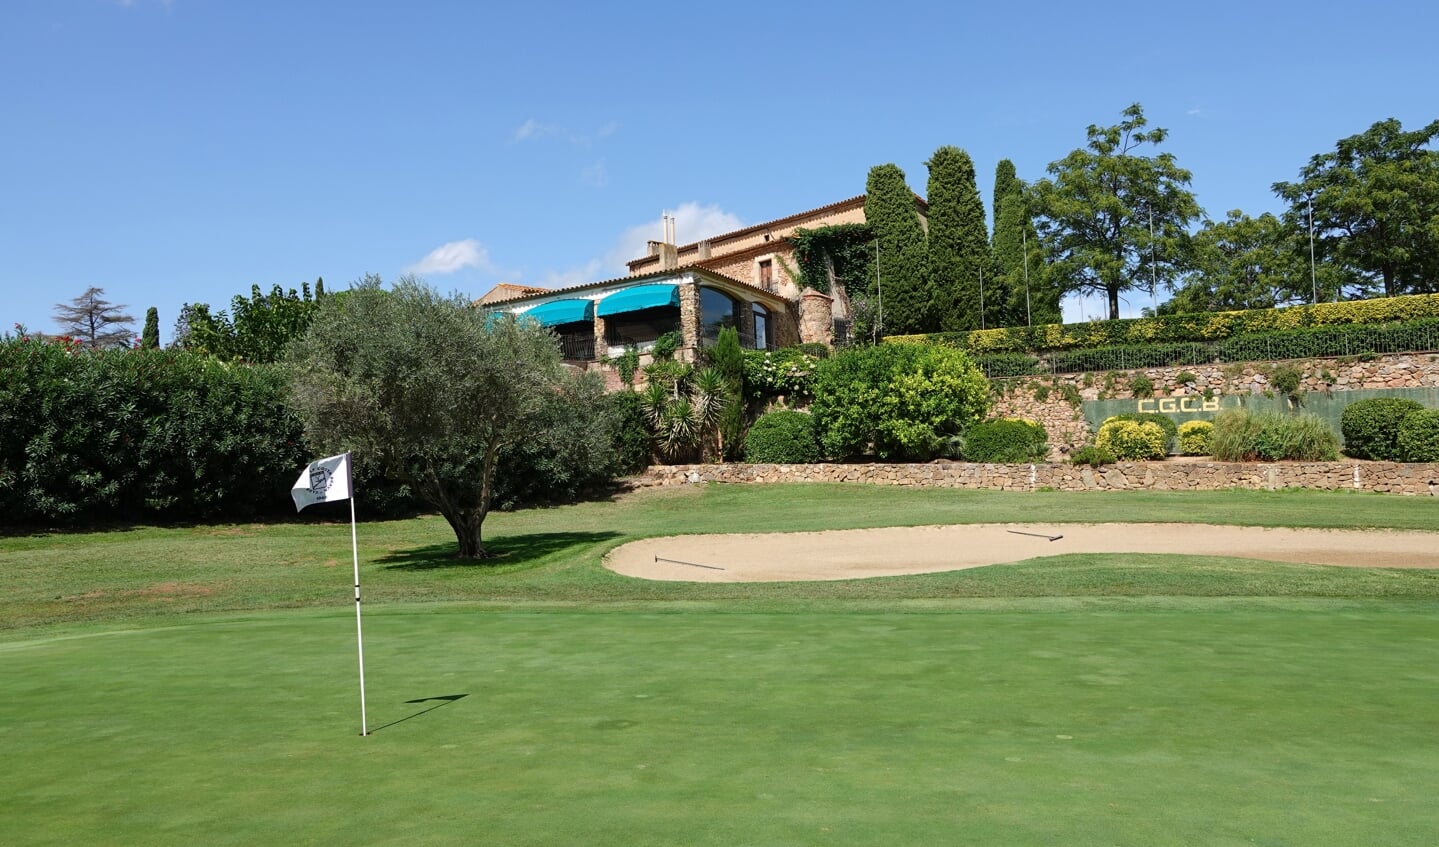 Het fraaie en gezellige clubhuis van Golf Costa Brava. (Foto NGM / Eric Korver)